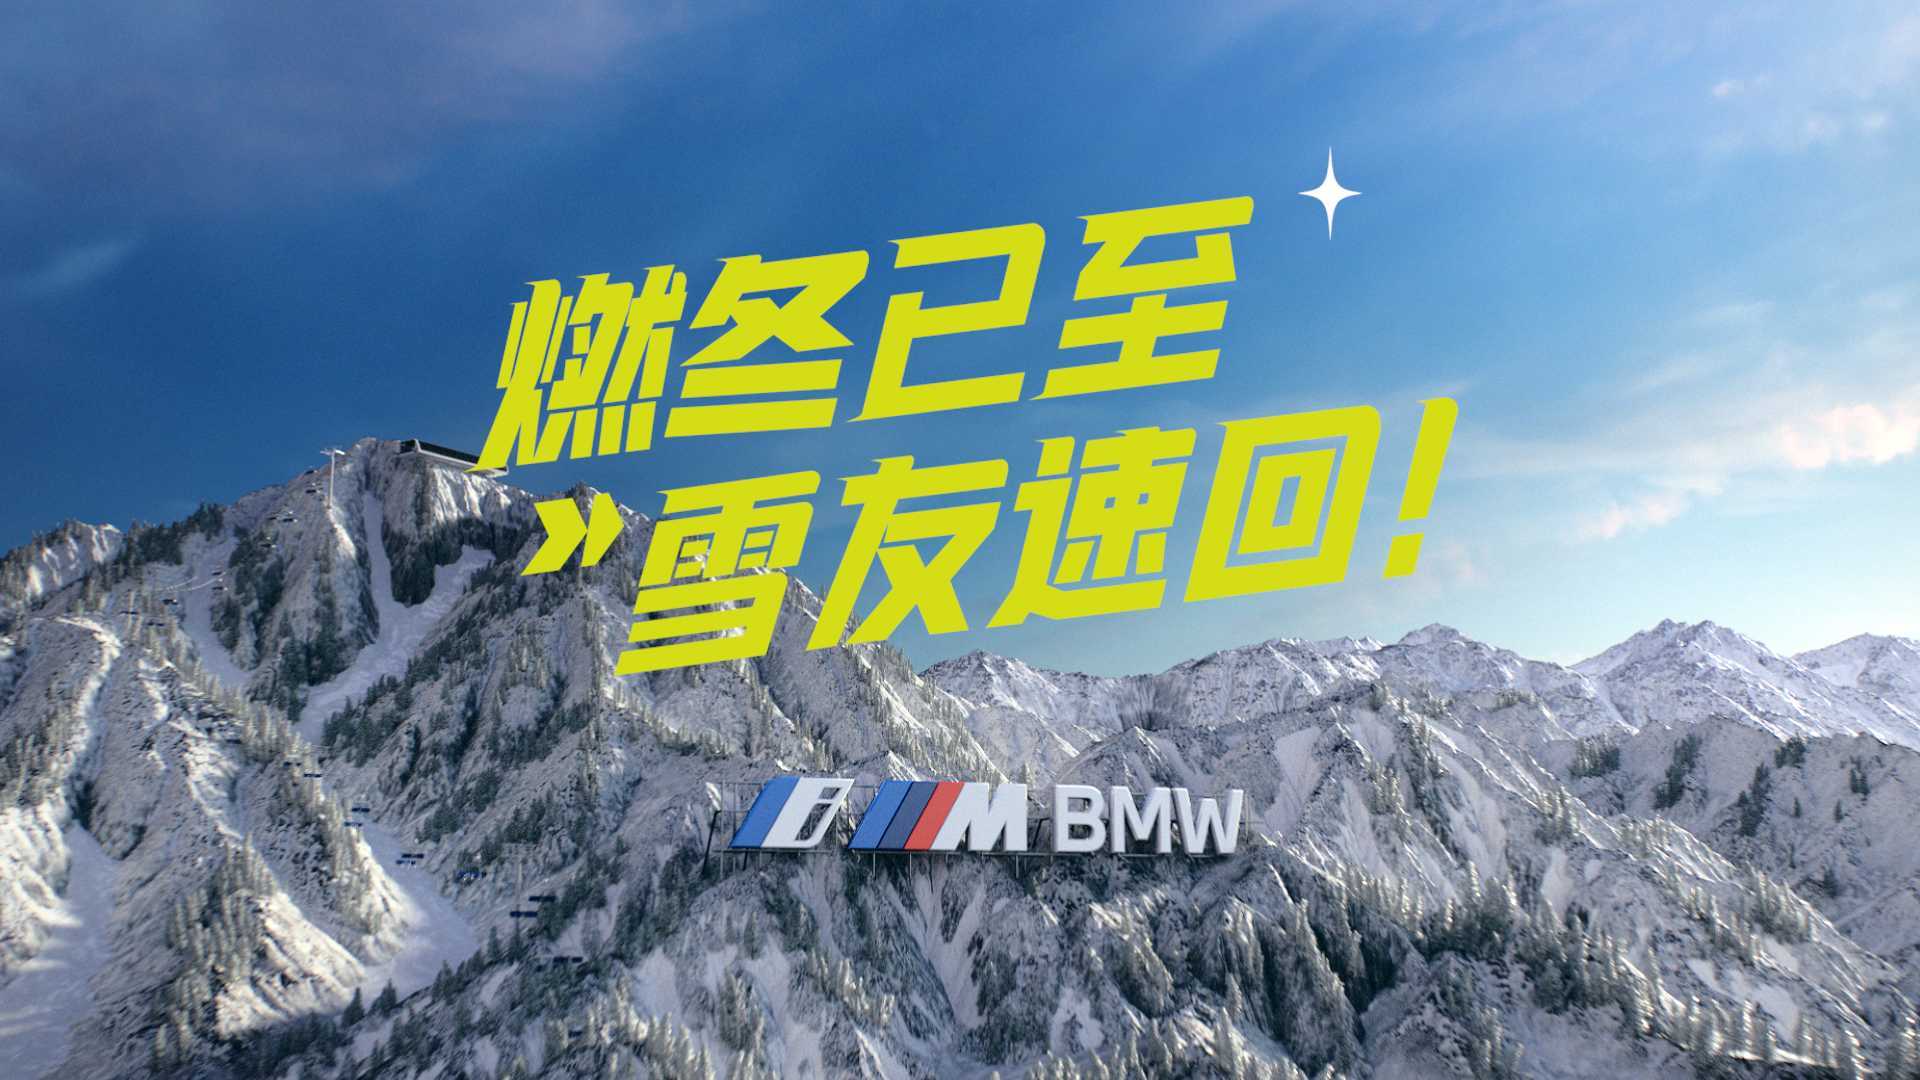 BMW 2023 热雪燃冬招募片